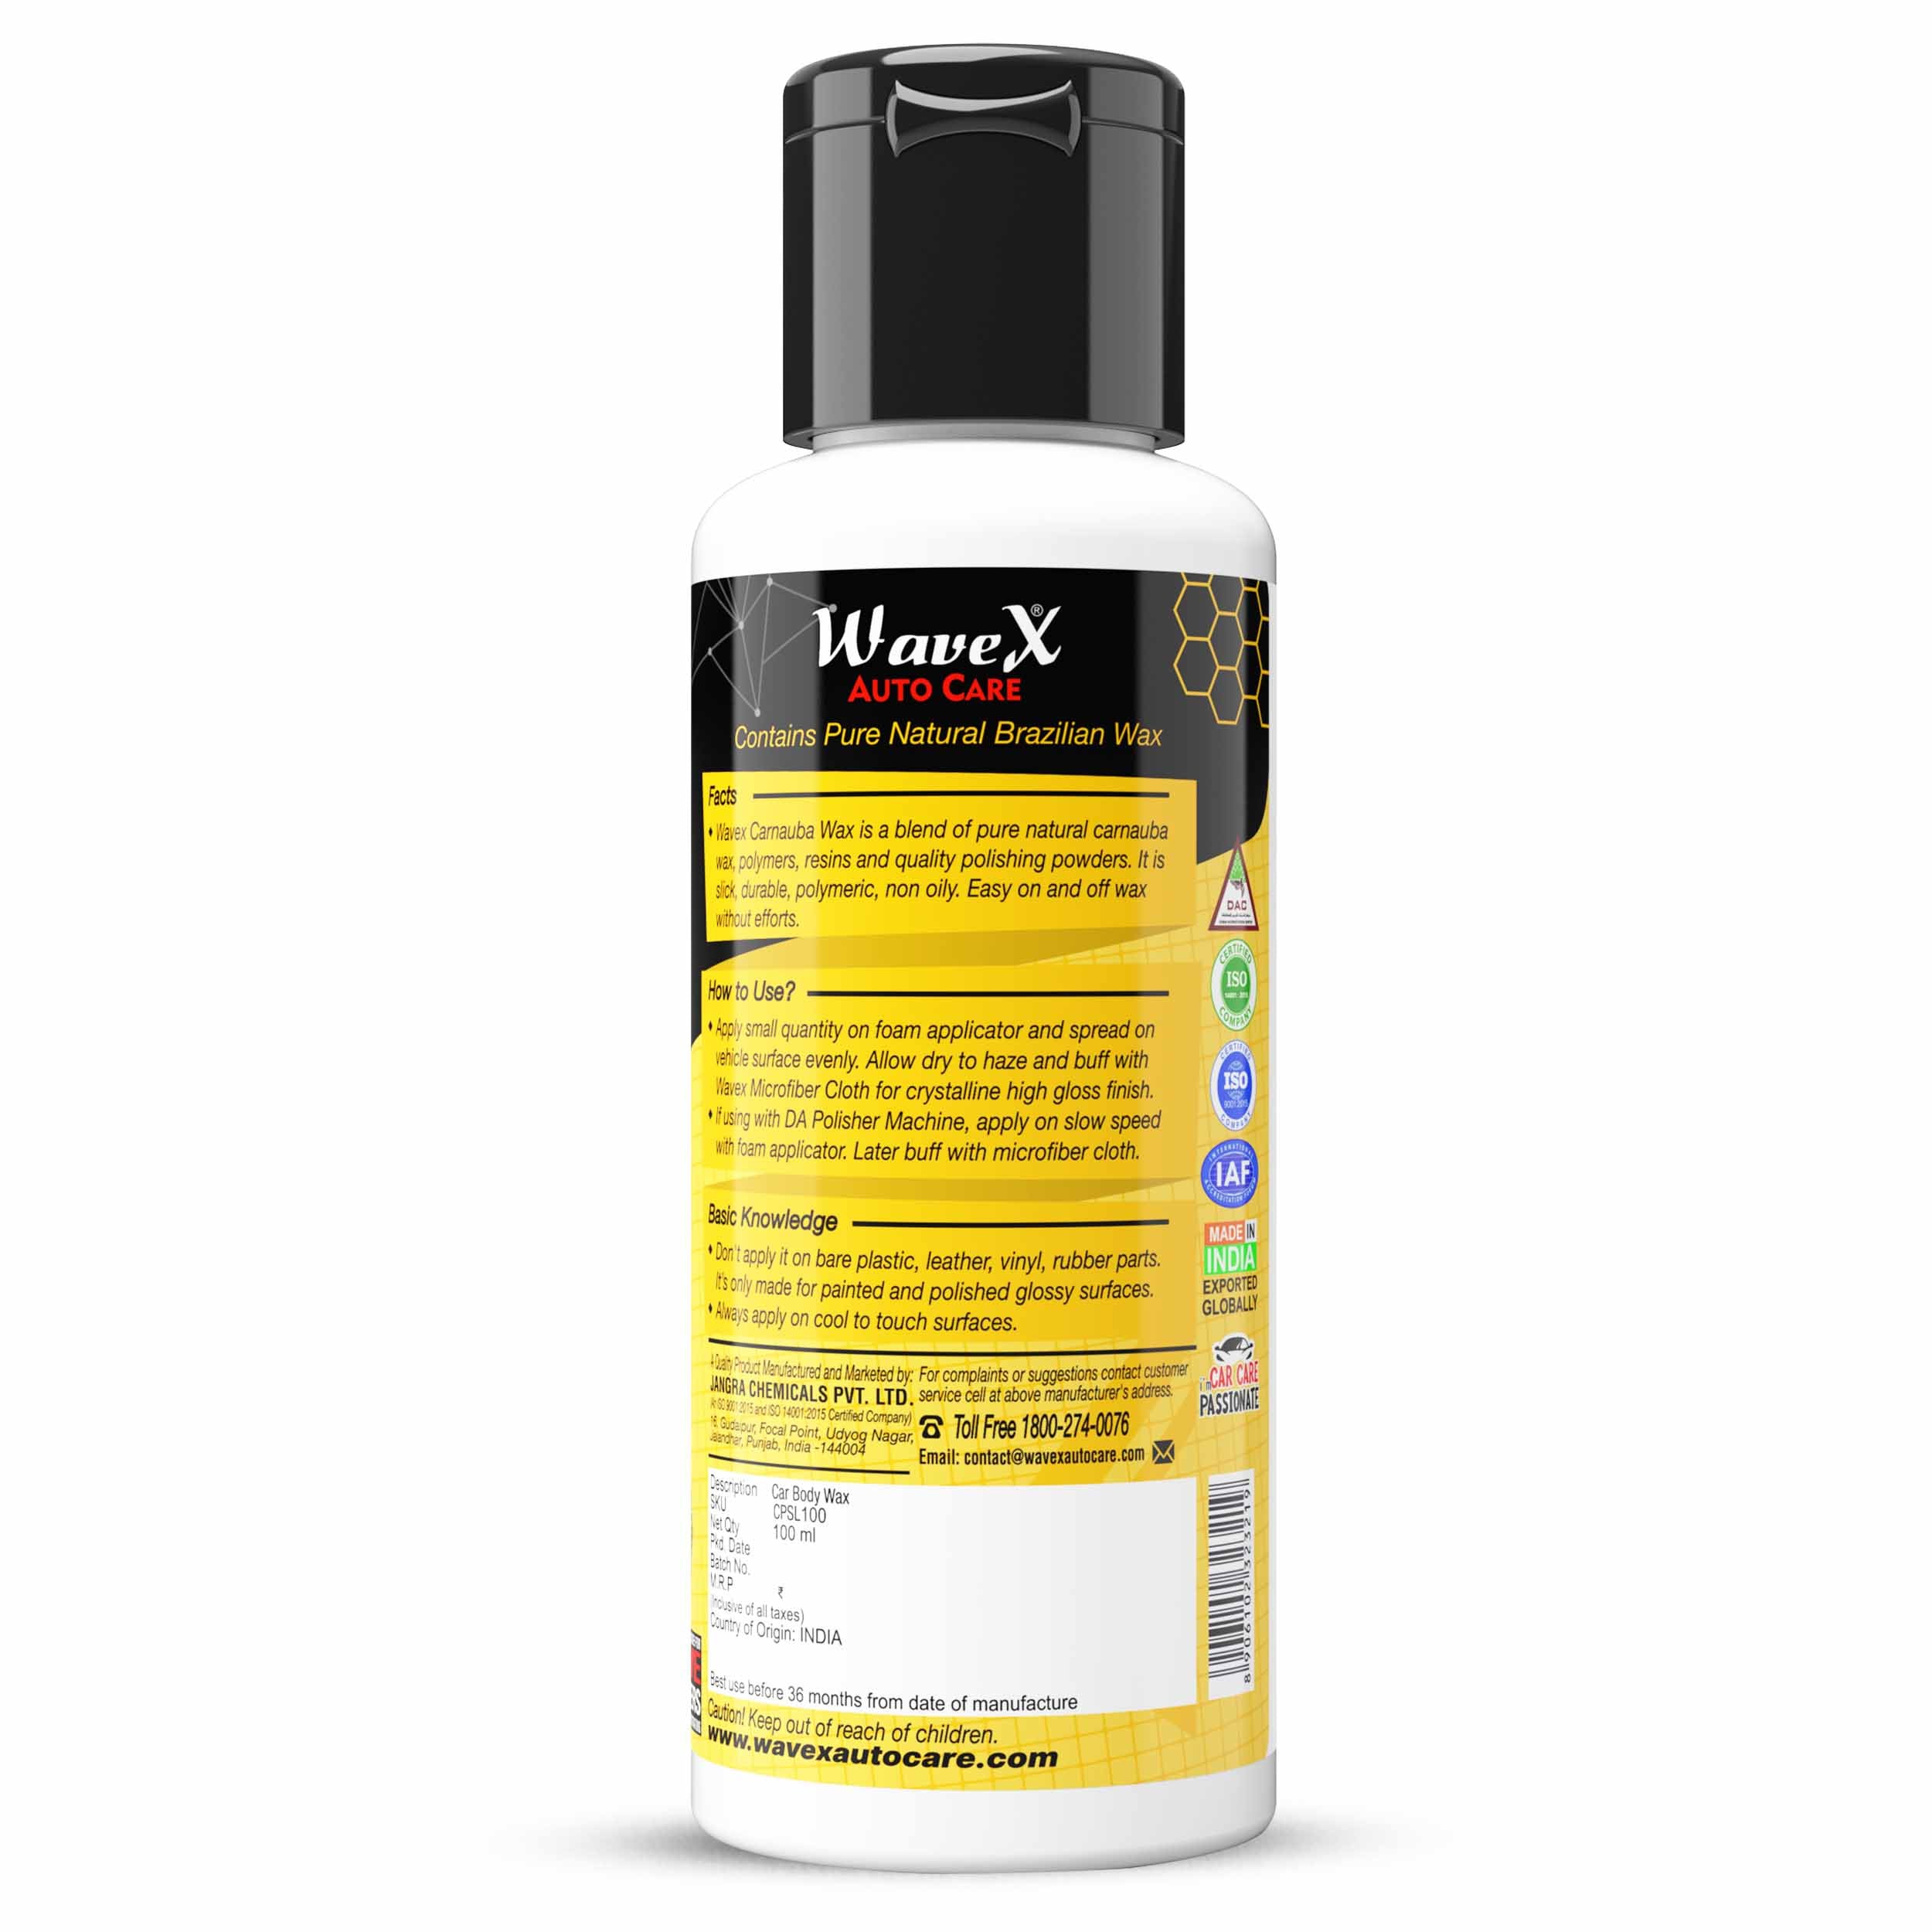 Brazilian Carnauba Wax Car Polish Wax (100ml) - Pure Liquid Carnauba Wax After Car Wash for Shine, Gloss, Paint Protection - Use On Car & Bike